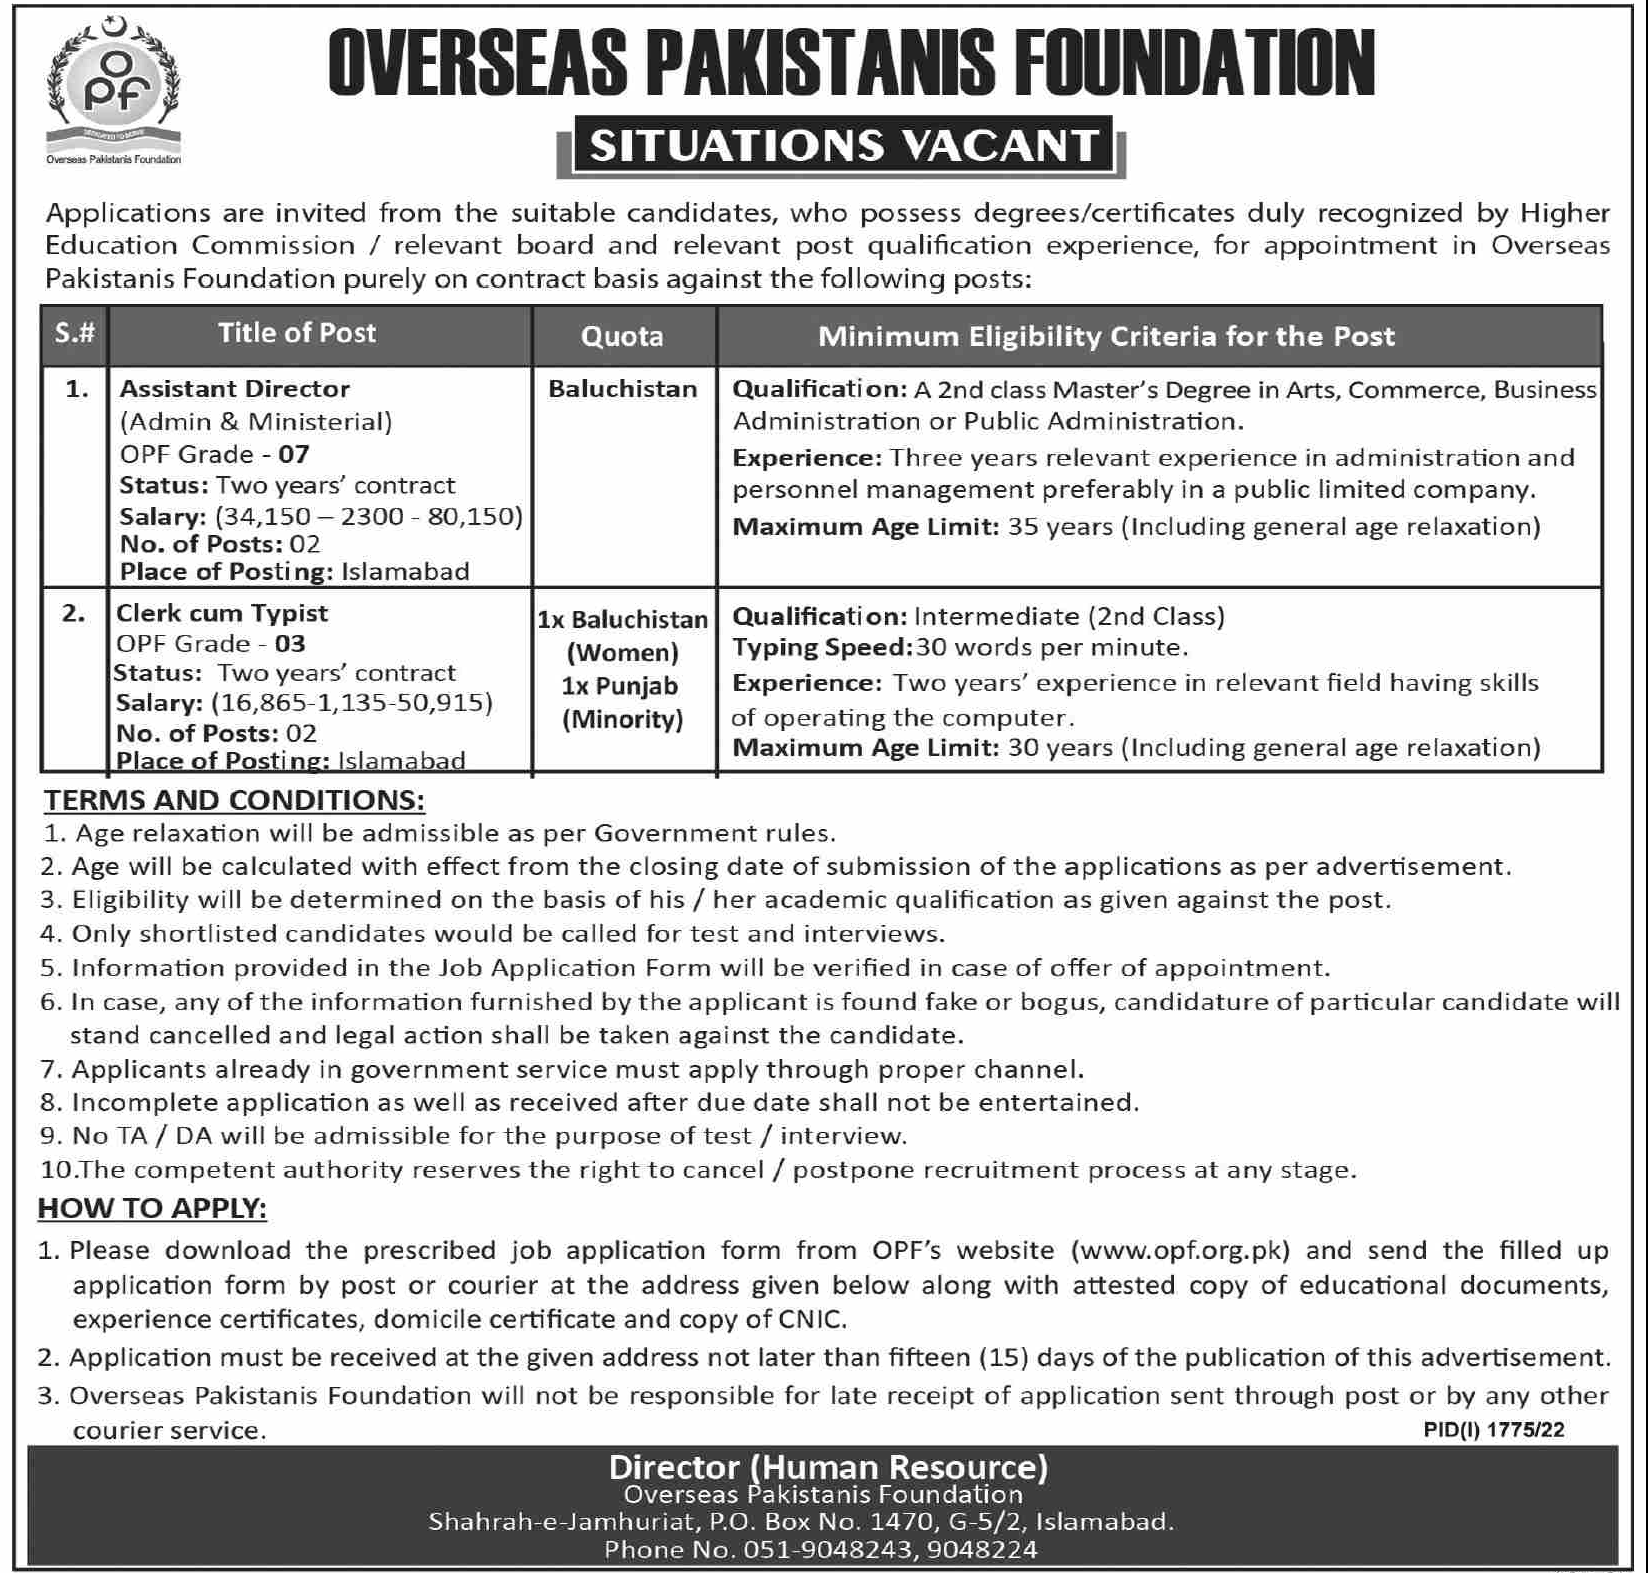 Overseas Pakistanis Foundation Jobs